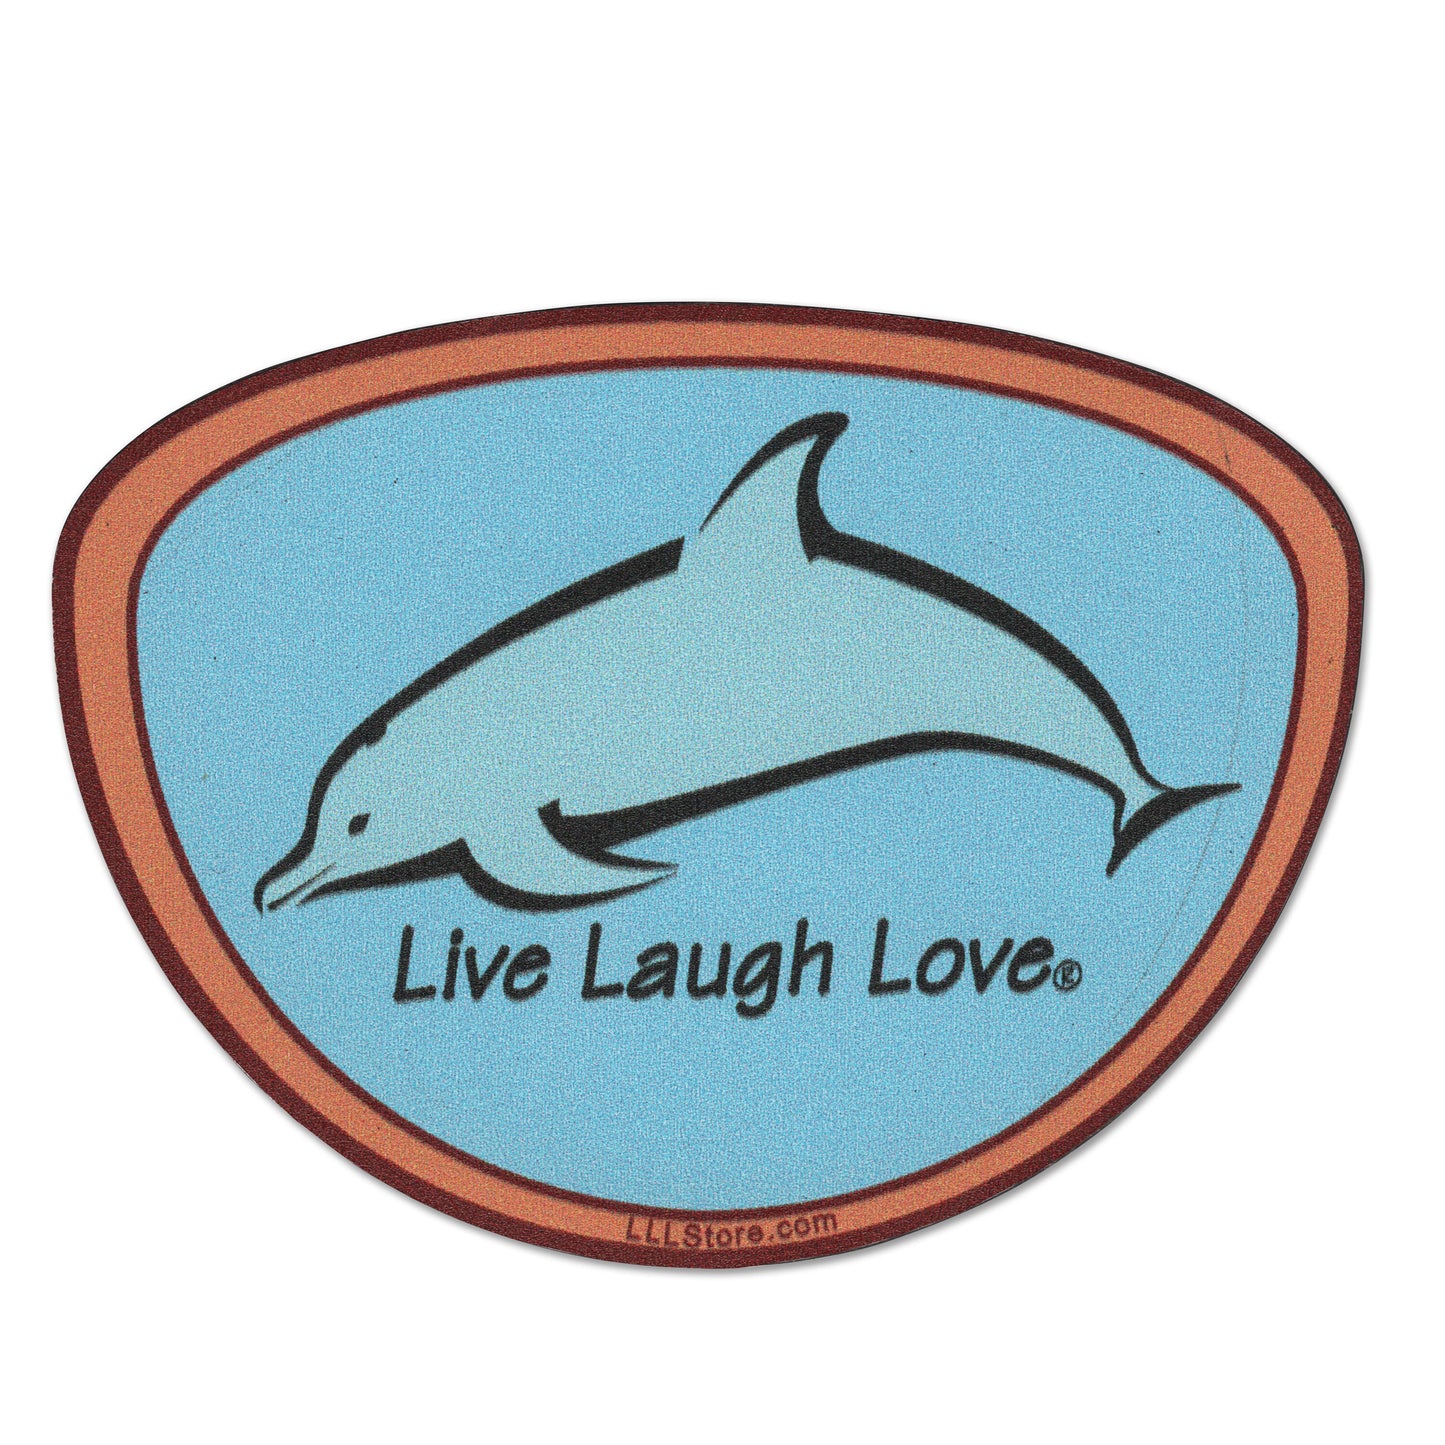 Live Laugh Love® Dolphin Sea Decorative Magnet